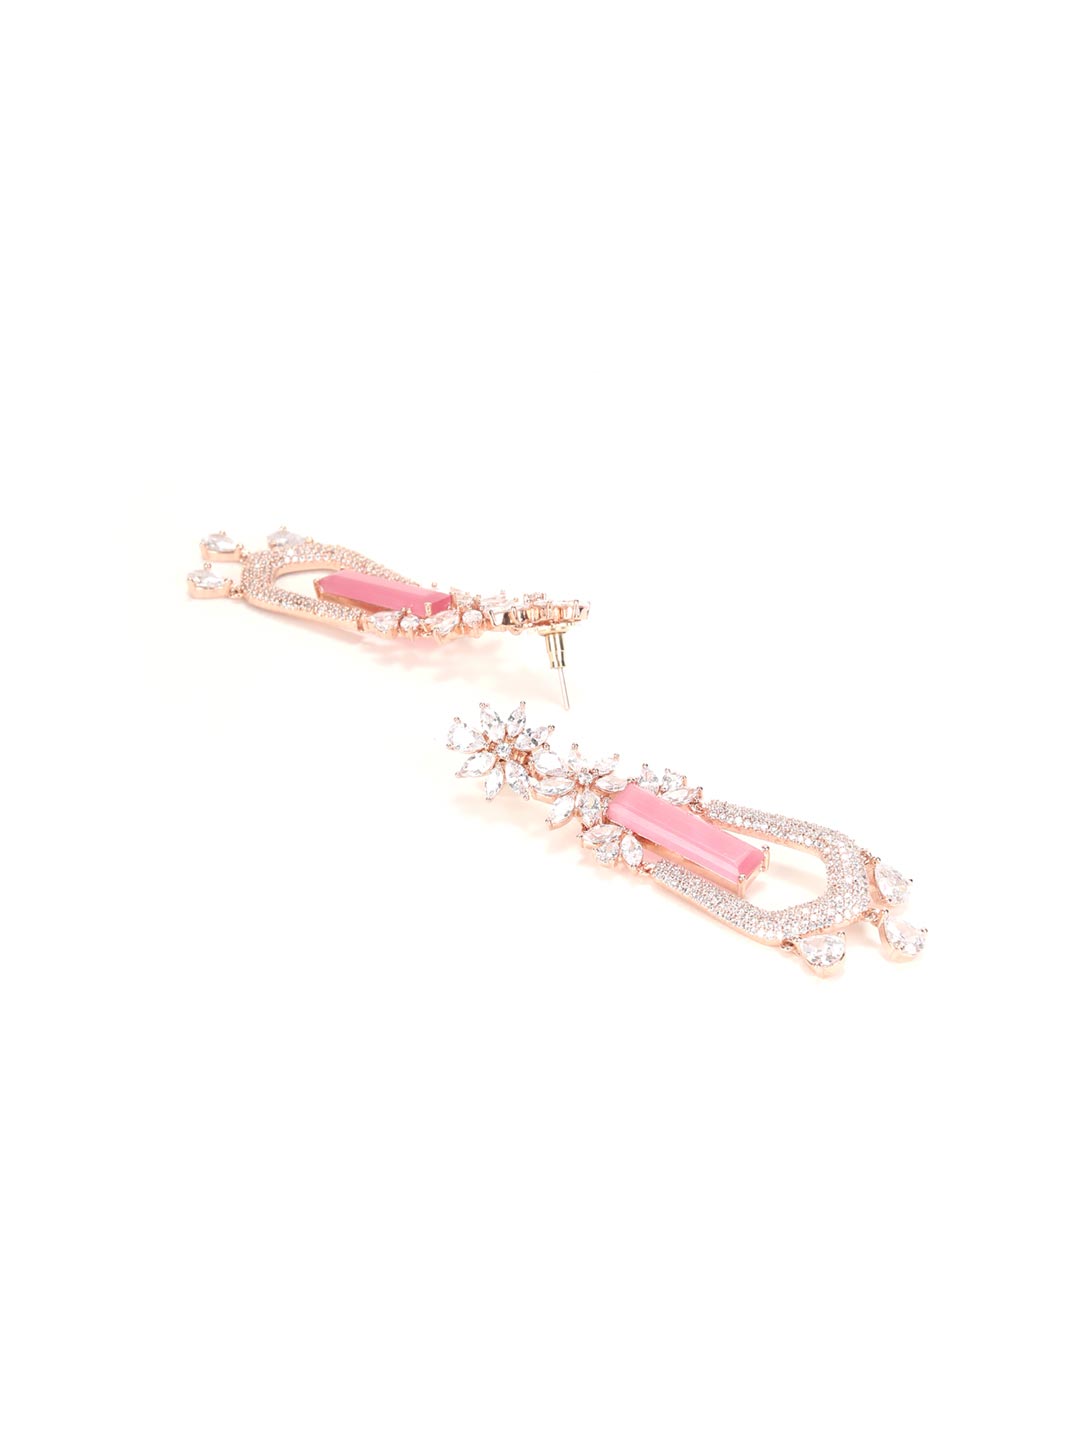 Top more than 127 pink drop earrings best